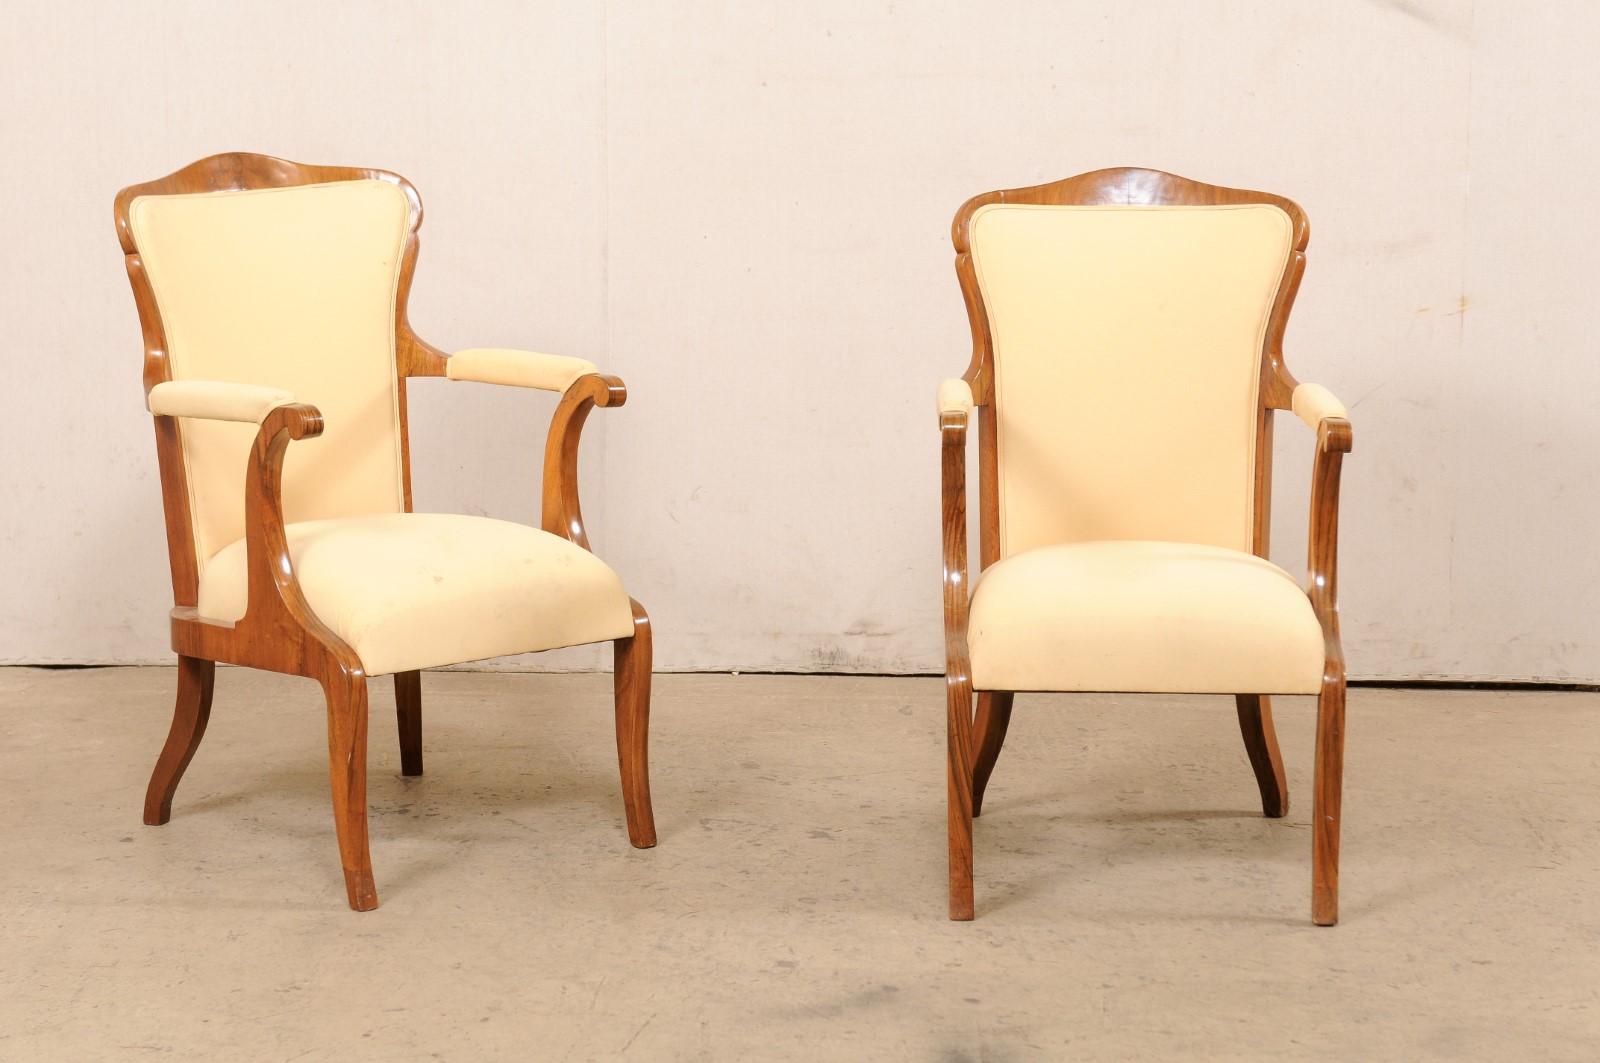 Ein französisches Paar geschnitzter und gepolsterter Fauteuil-Sessel aus dem frühen bis mittleren 20. Dieses Sesselpaar aus Frankreich hat gepolsterte Rückenlehnen, die von einer elegant geschnitzten und gewölbten hölzernen Oberschiene mit sanft